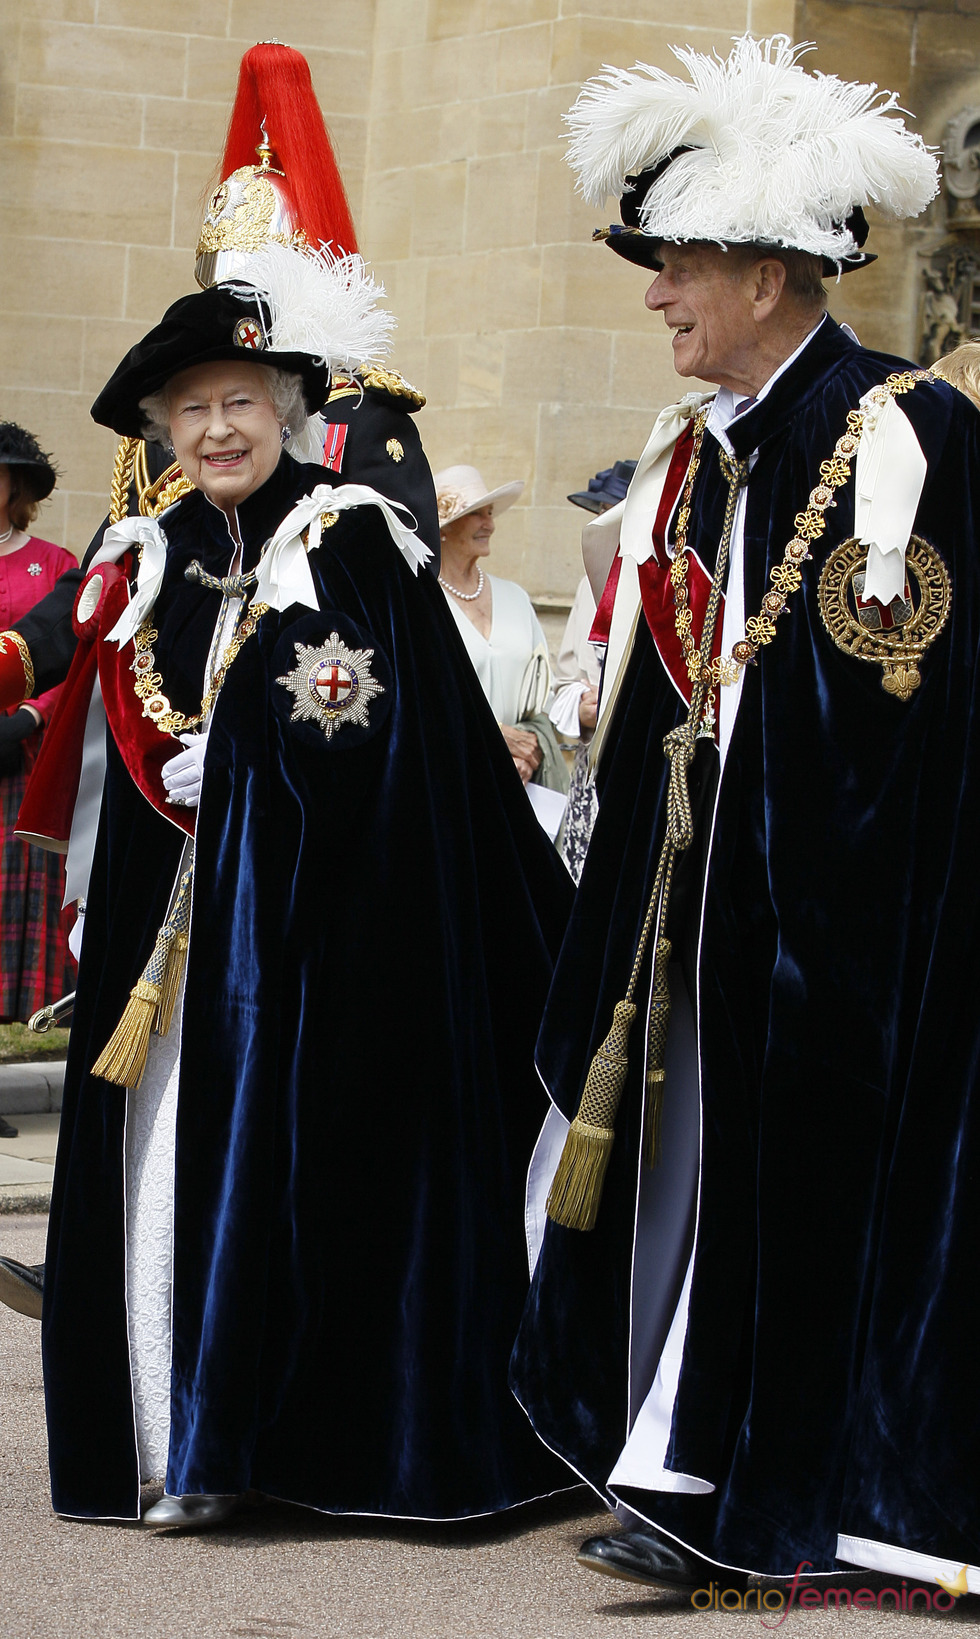 La reina Isabel II y su marido el Duque de Edimburgo en la Procesión de la Orden de la Jarretera